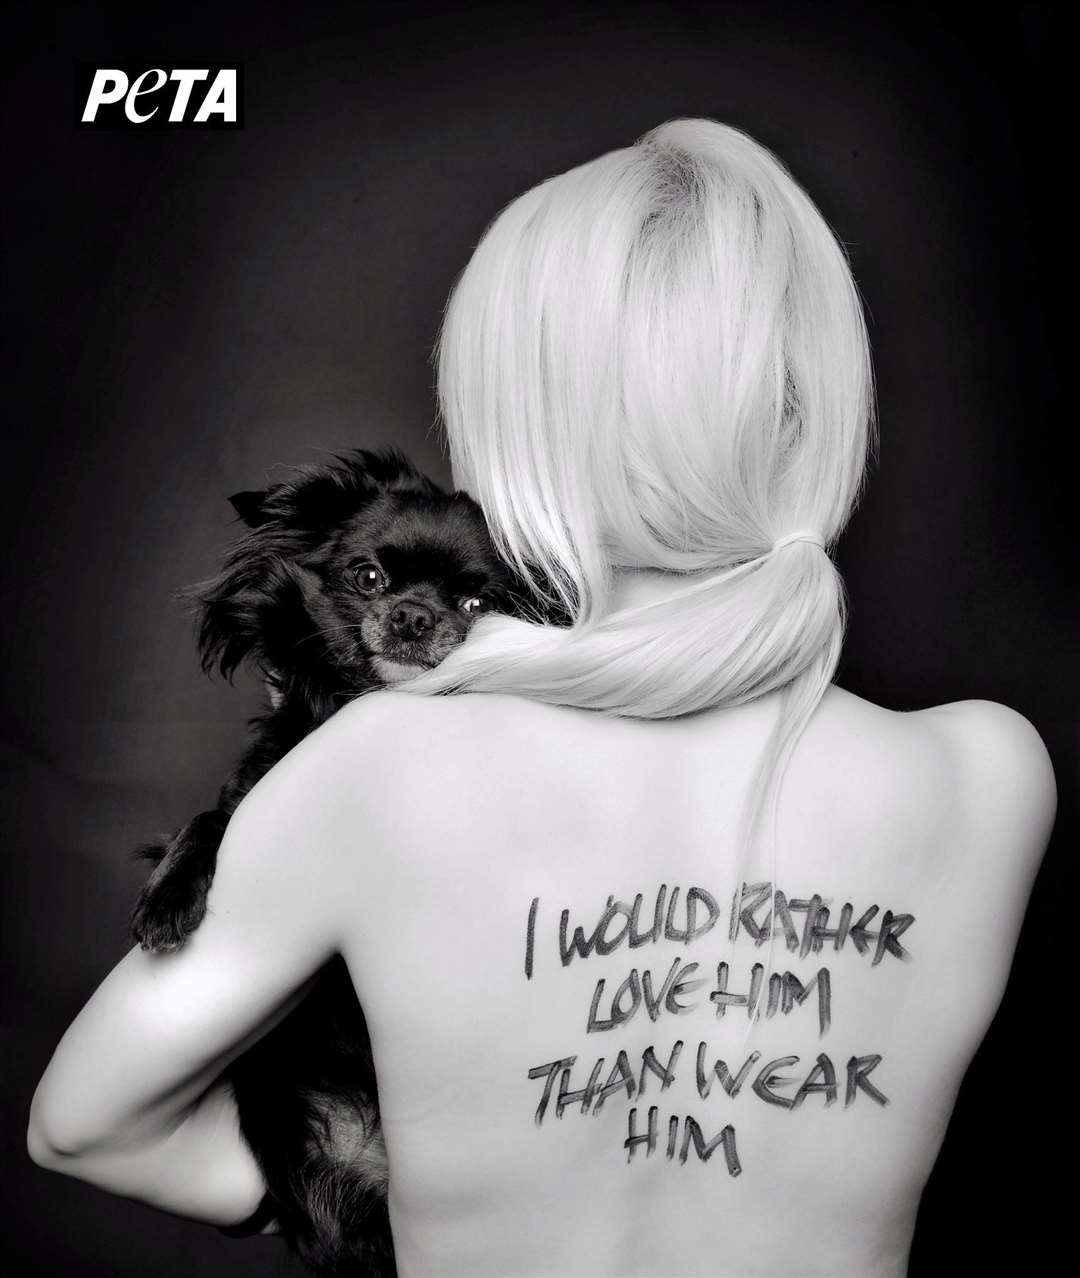 Natalie Oag modelled for this Peta anti-fur poster.